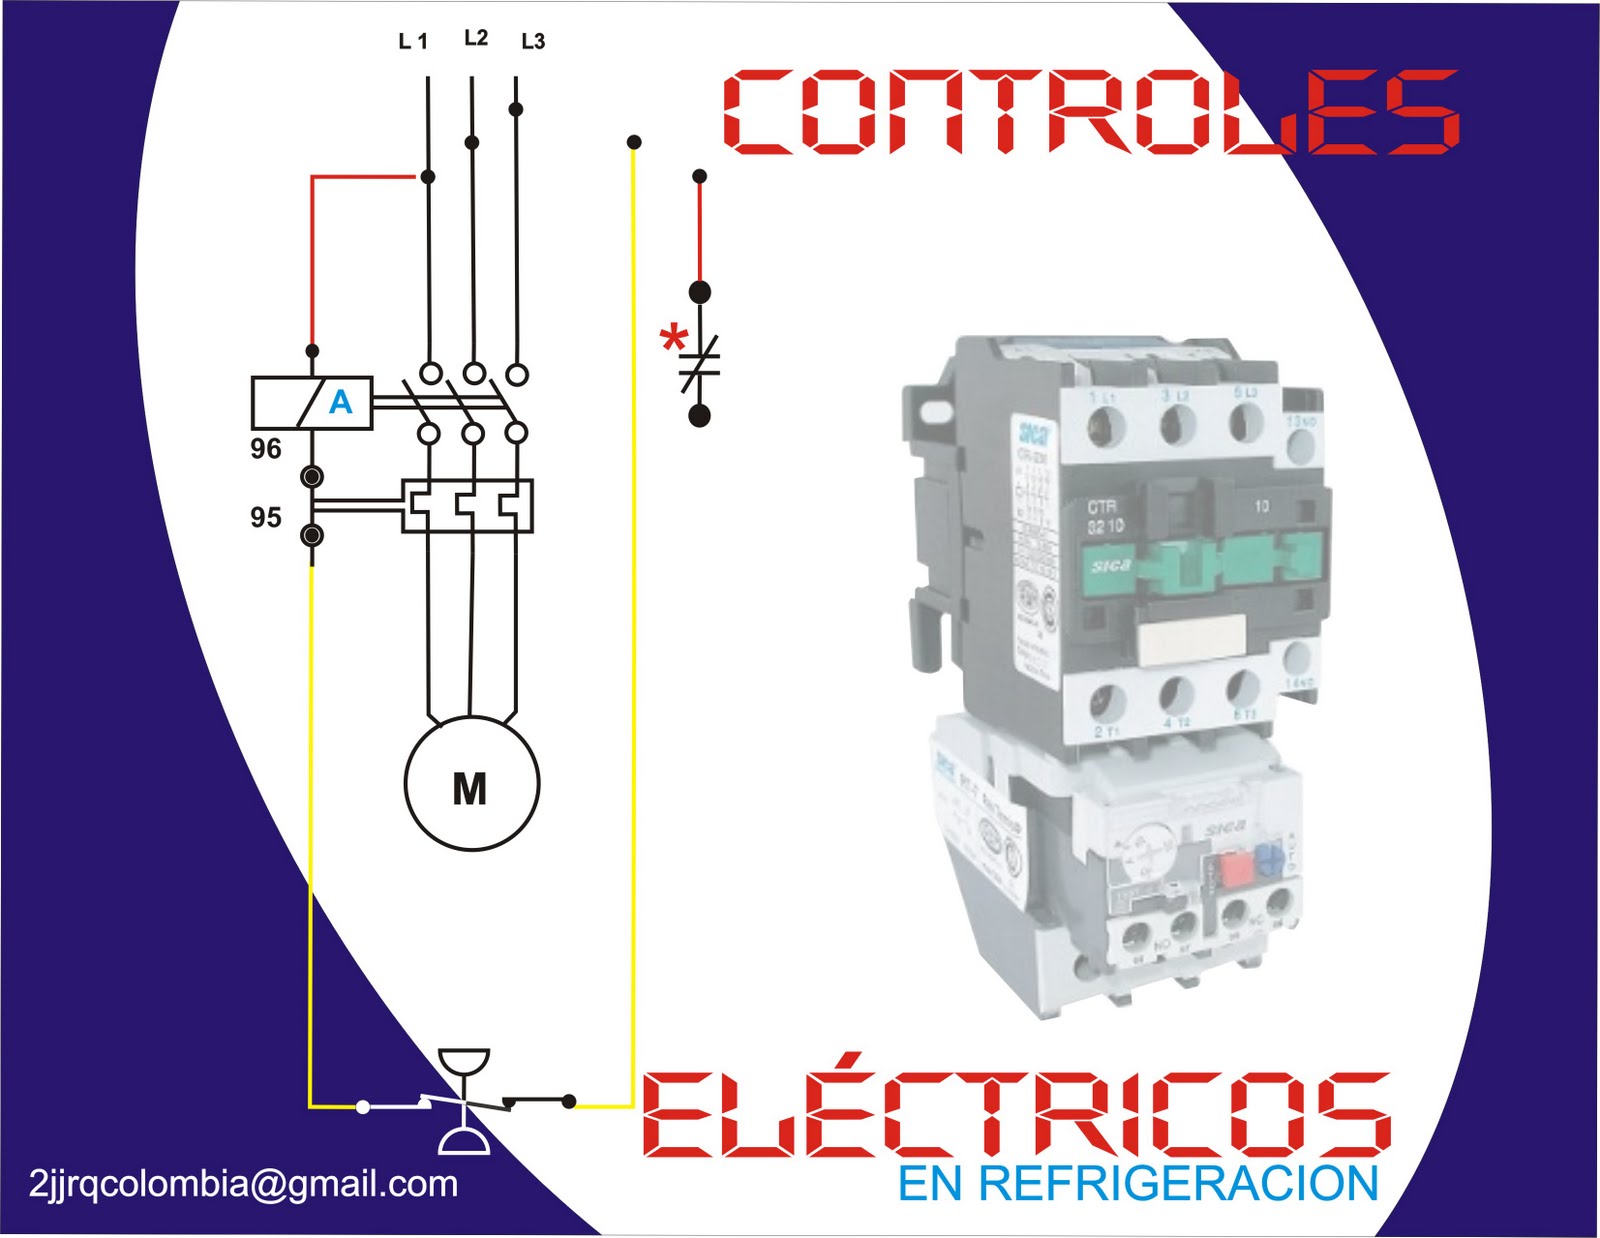 JJREFRIGERACION: CONTROLES ELECTRICOS+ BASICOS + CUARTO FRIO